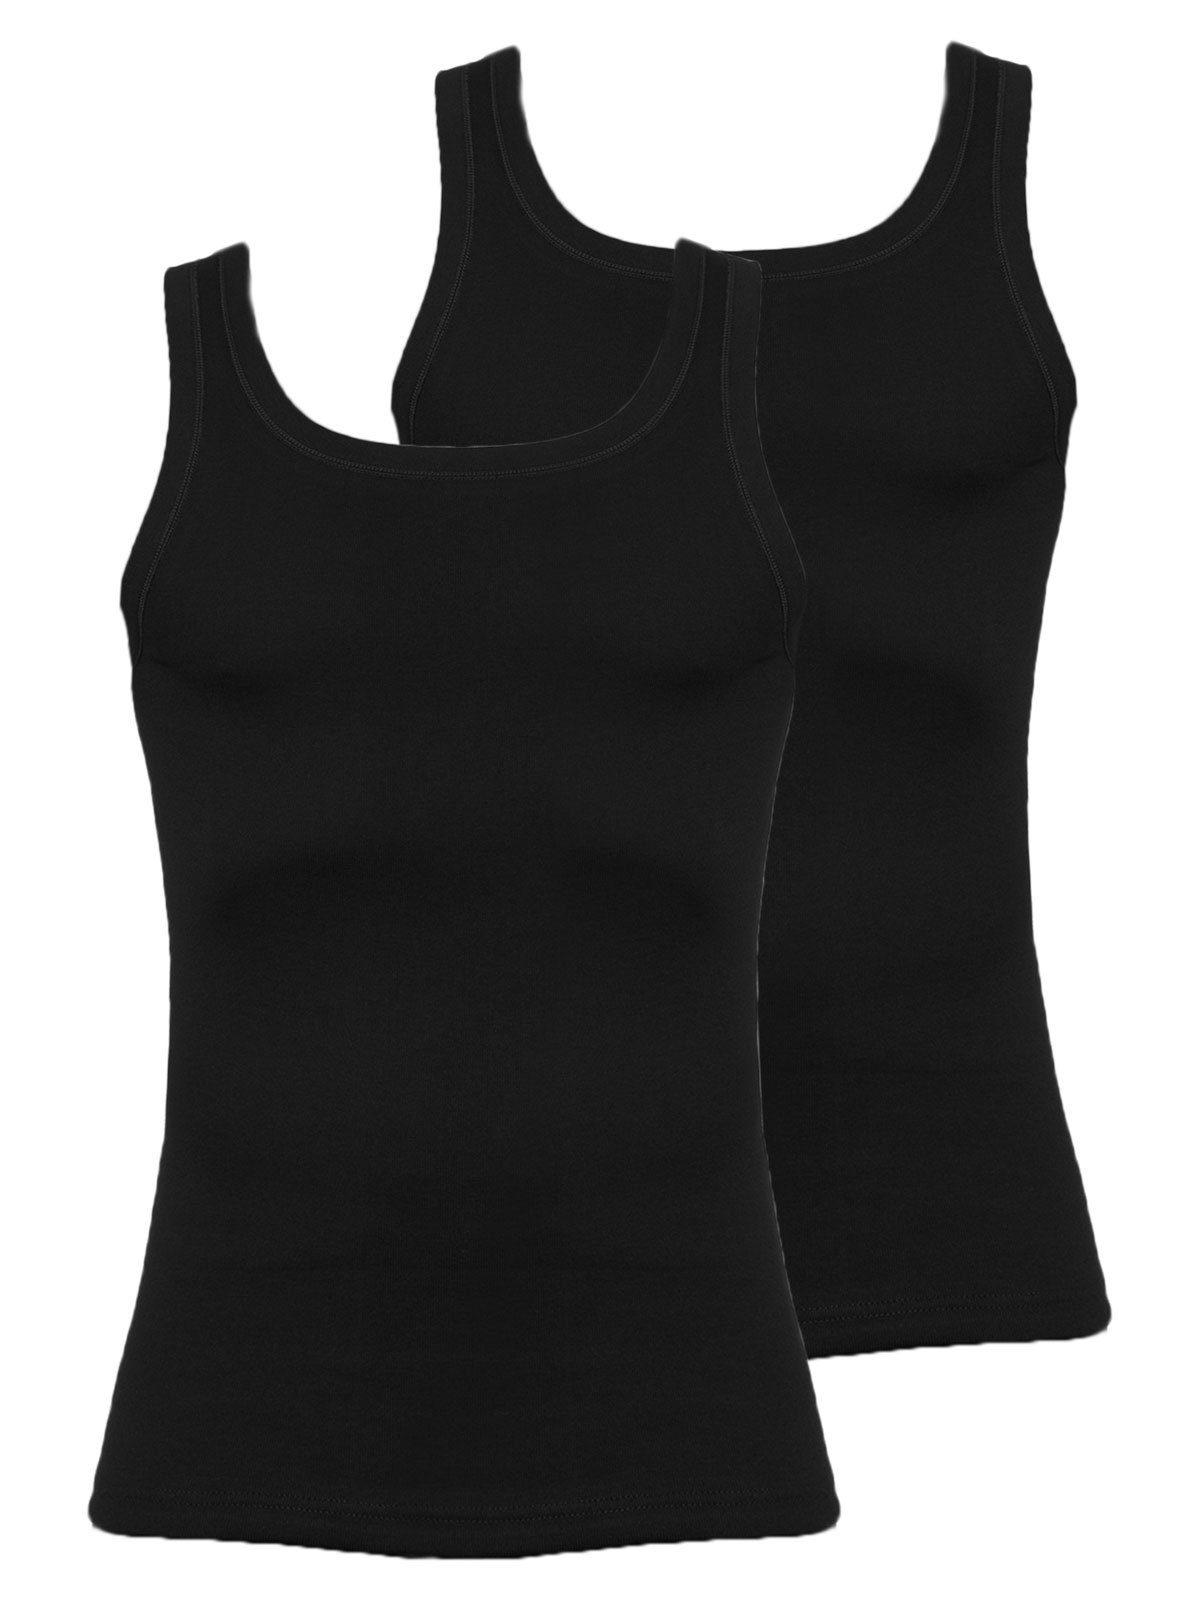 KUMPF Achselhemd 2er Sparpack Herren Unterhemd Feinripp (Spar-Set, 2-St) hohe Markenqualität schwarz